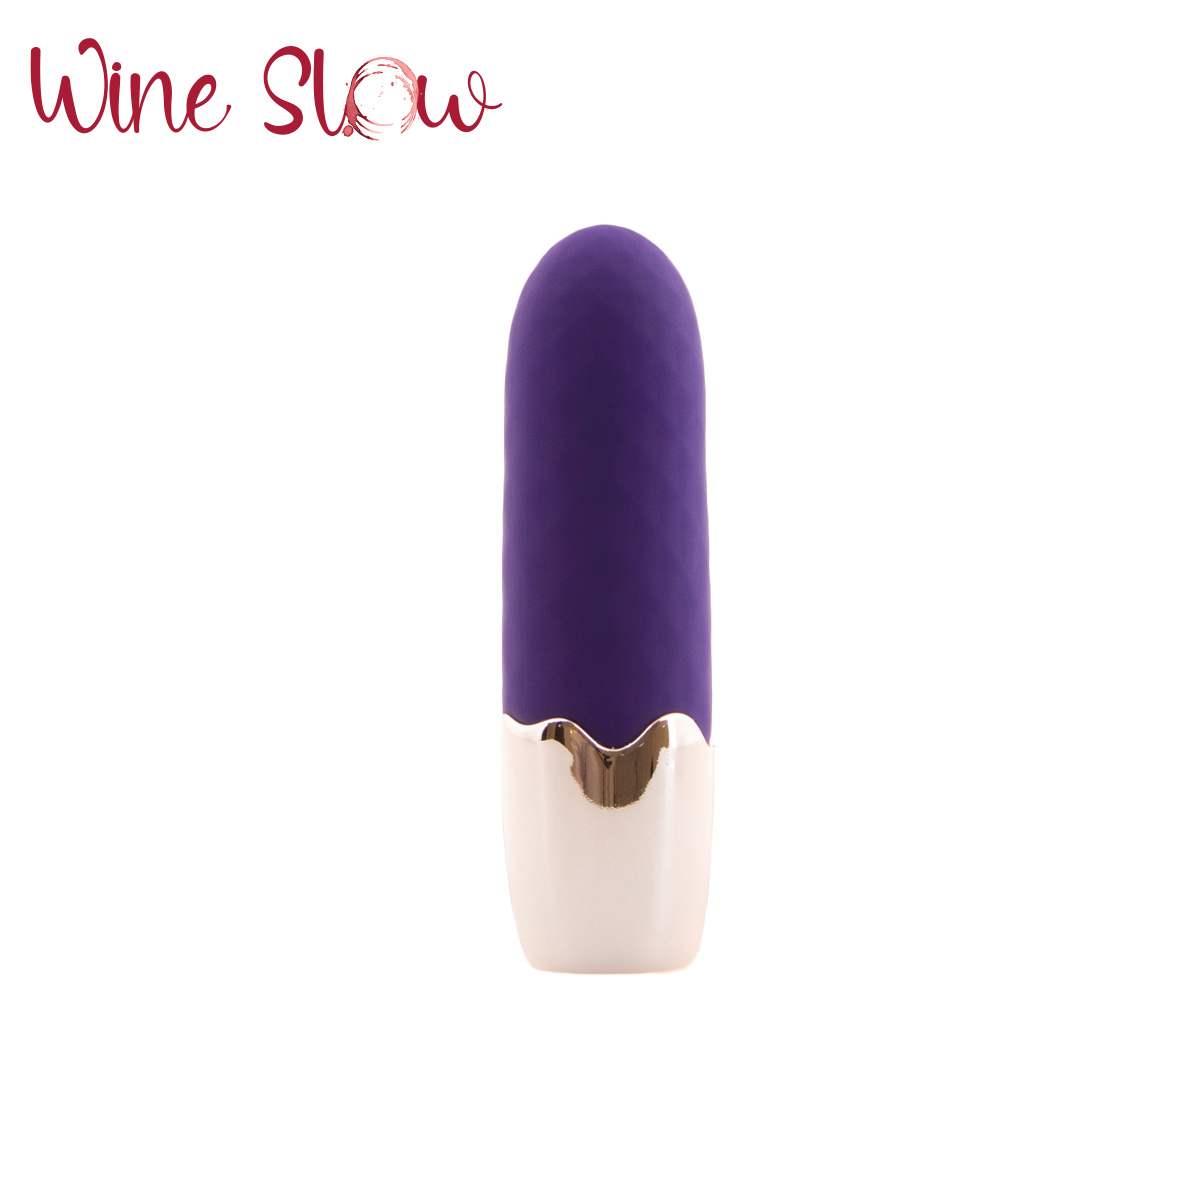 Wine Slow Bullet